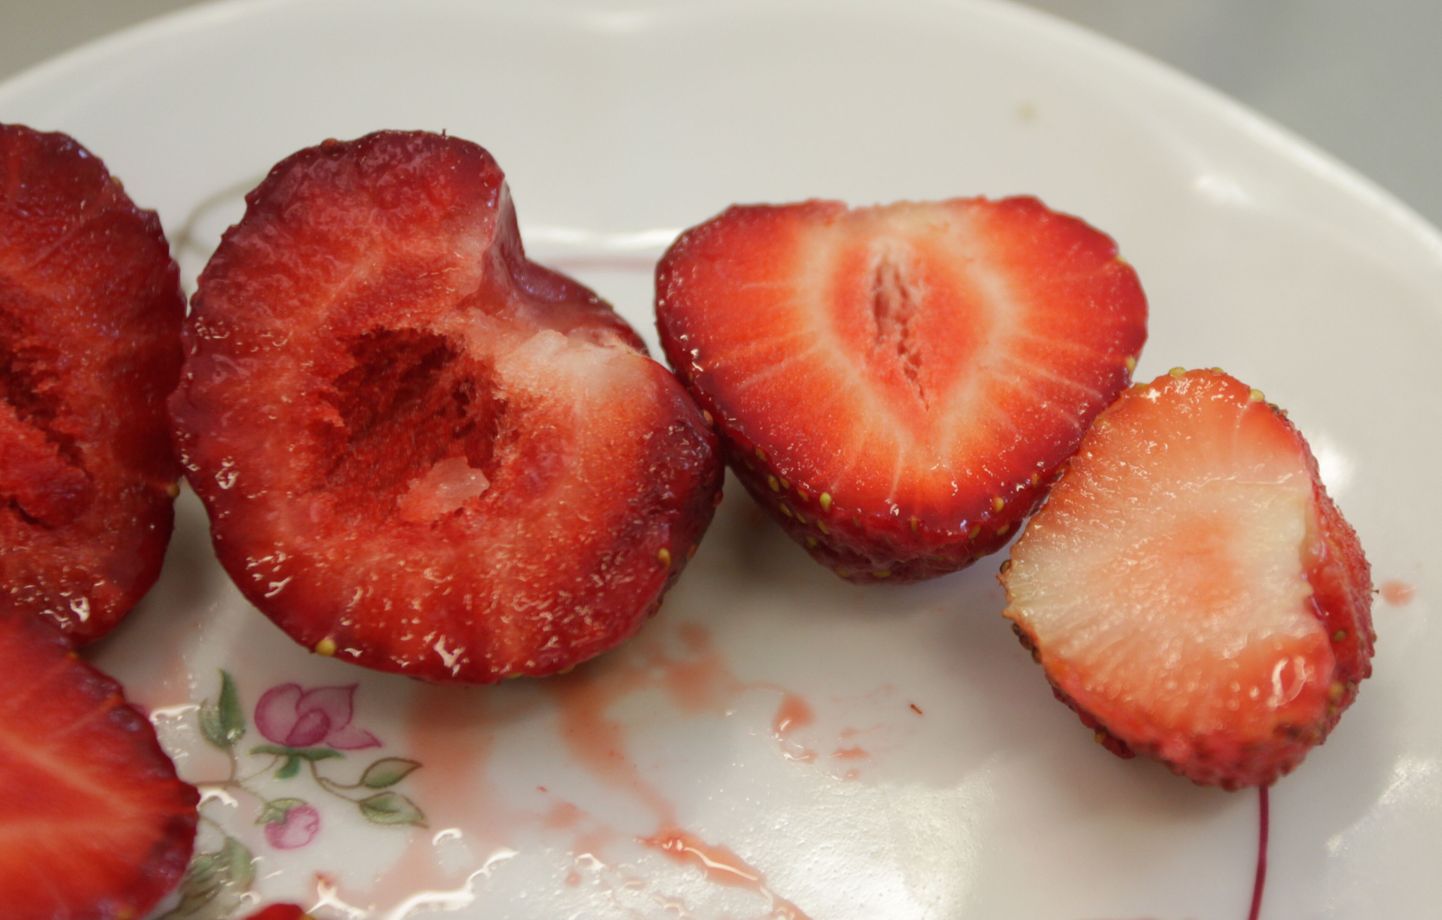 Muu hulgas võttis varas sügavkülmast kaasa maasikad. Foto on illustratiivne.